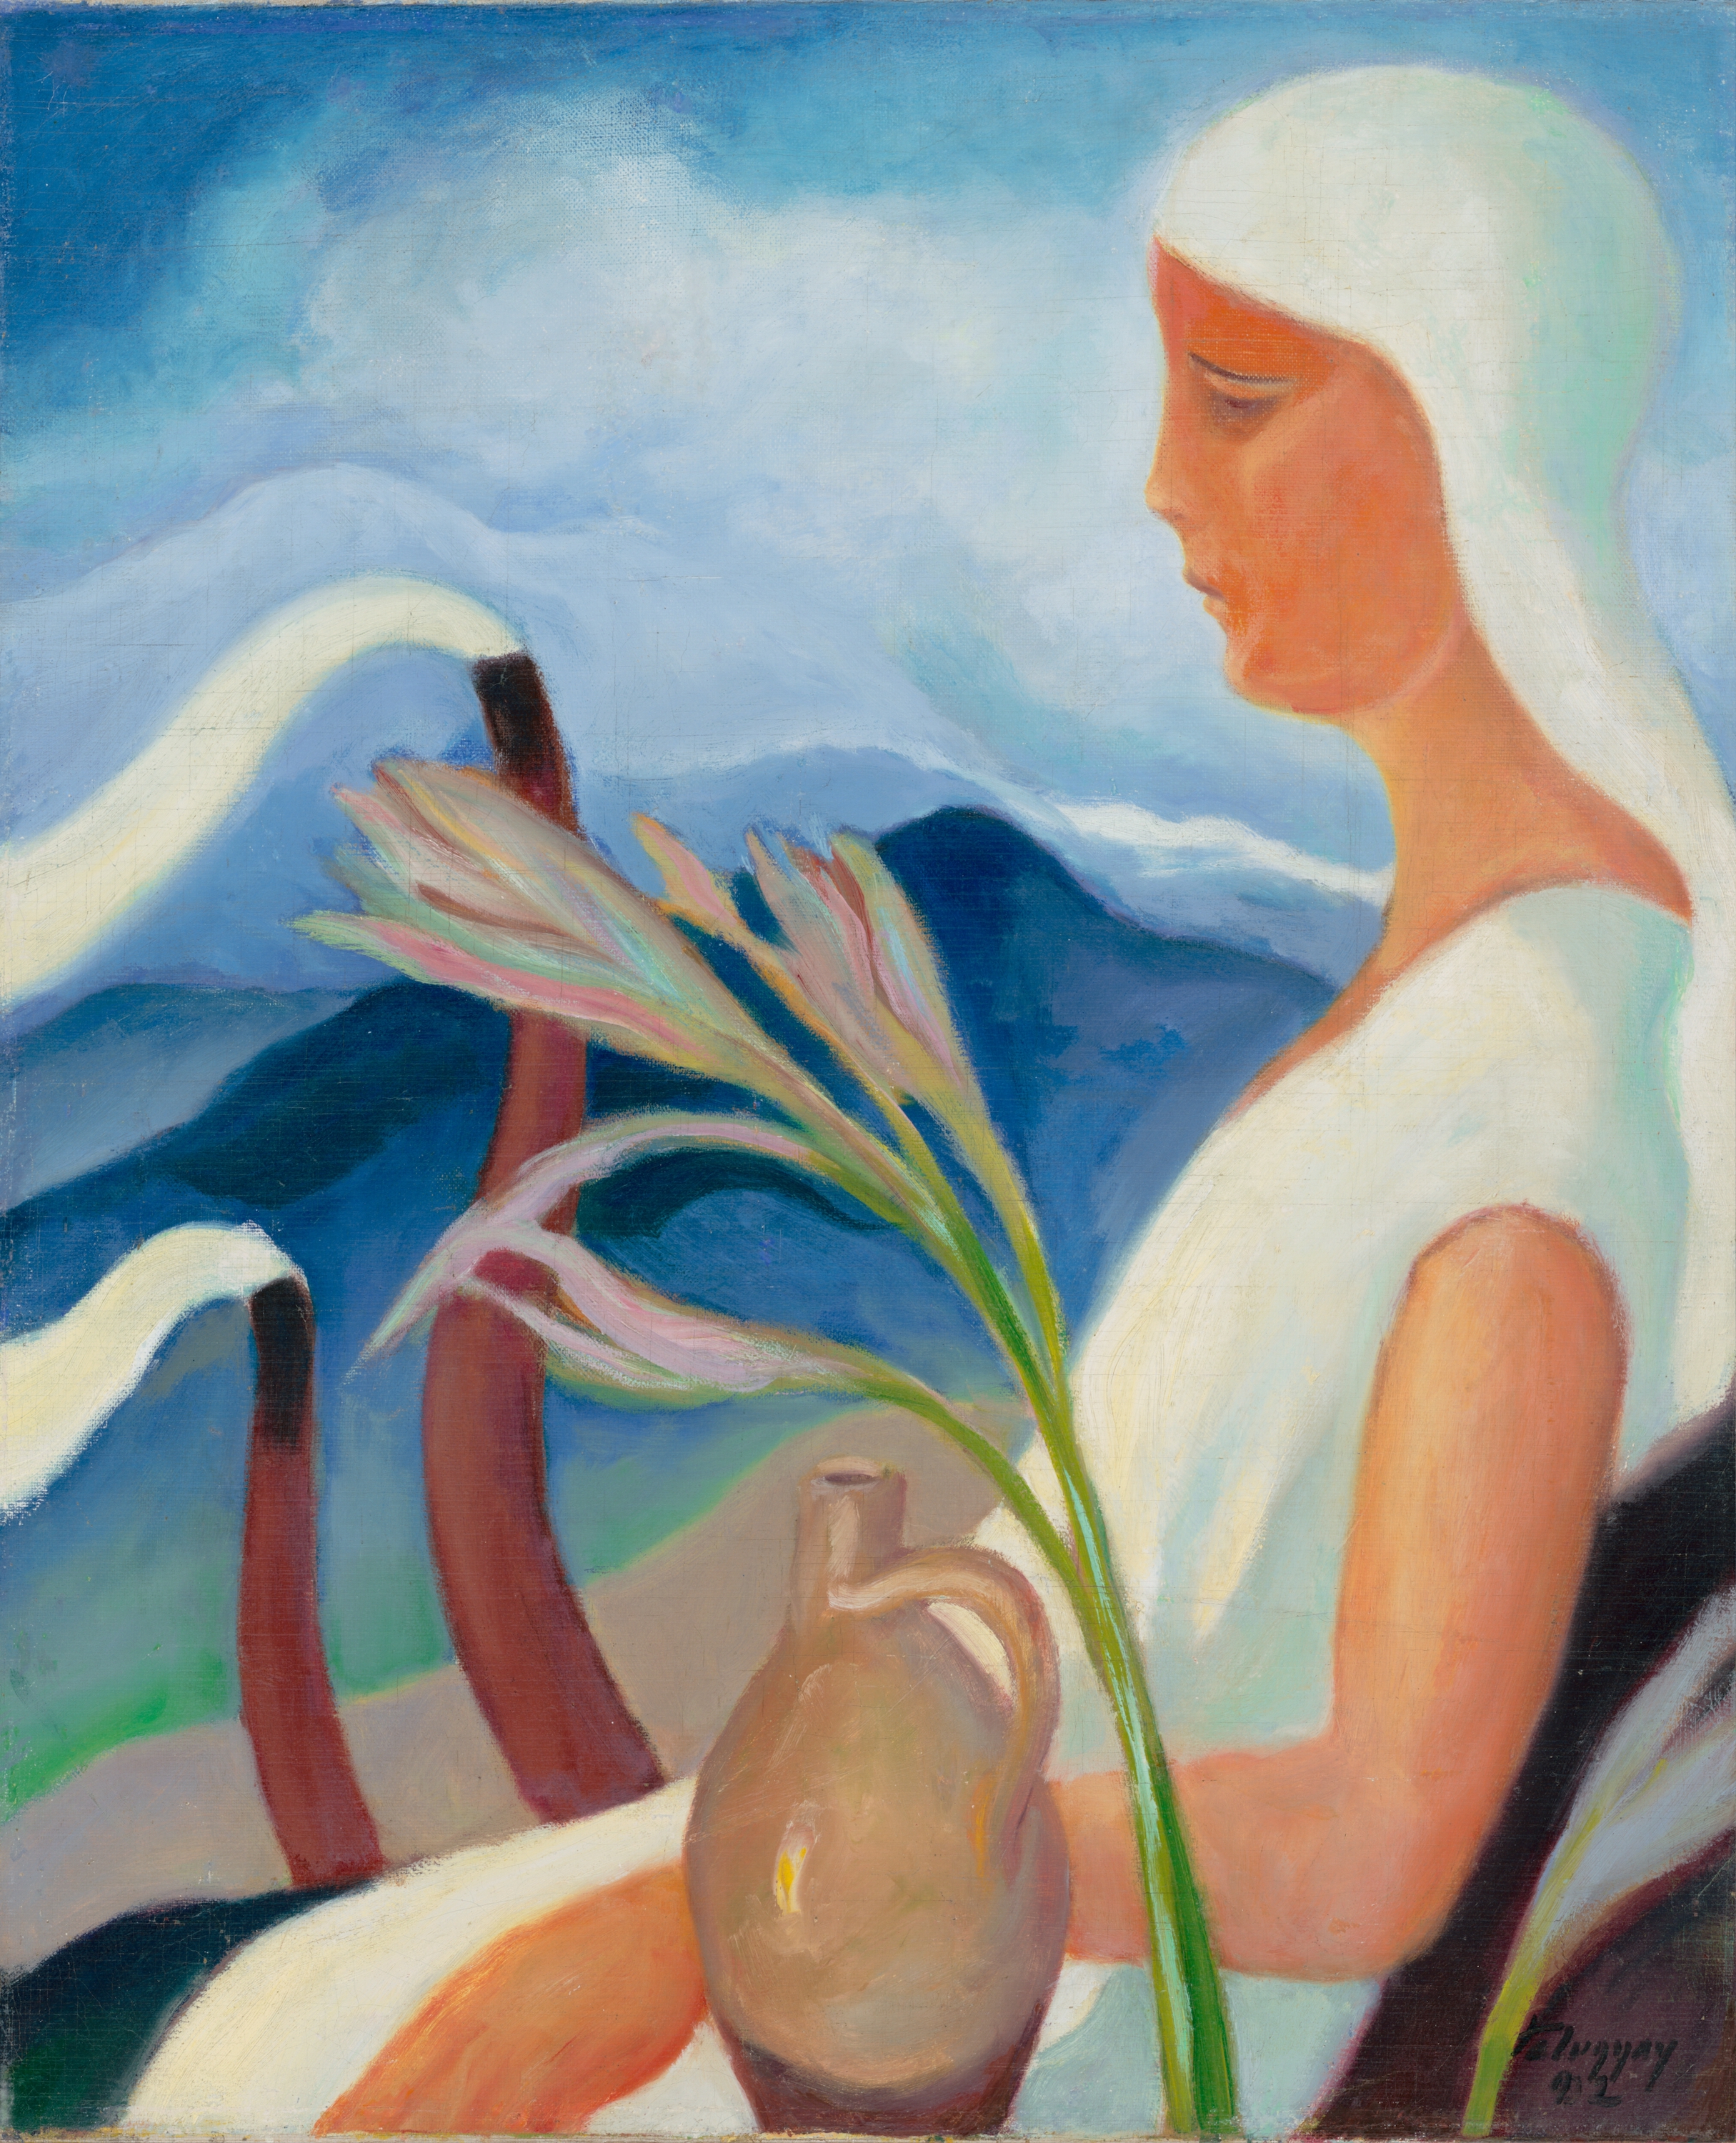 Mädchen in Weiß mit Fabrikschornsteinen und Blumen by Zoltán Palugyay - 1932 - 61,5 x 51,5 cm Europeana Foundation